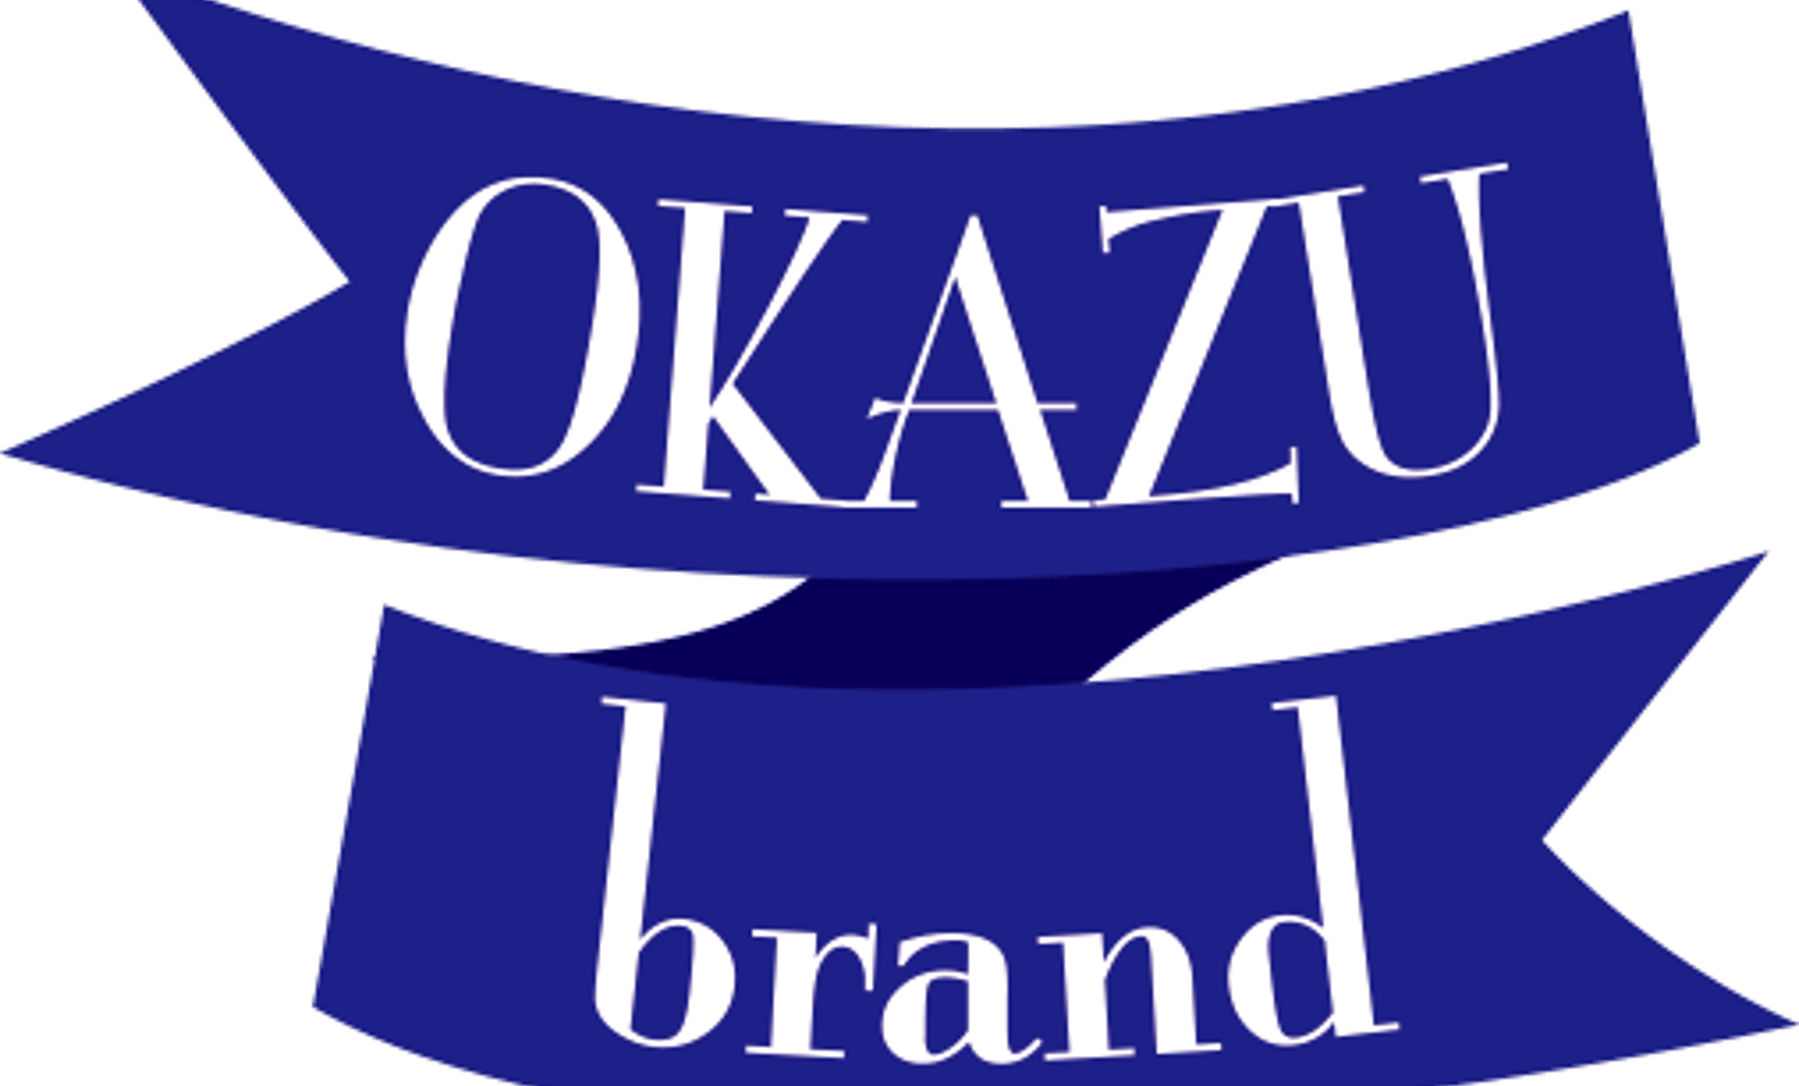 OKAZU brandイメージ